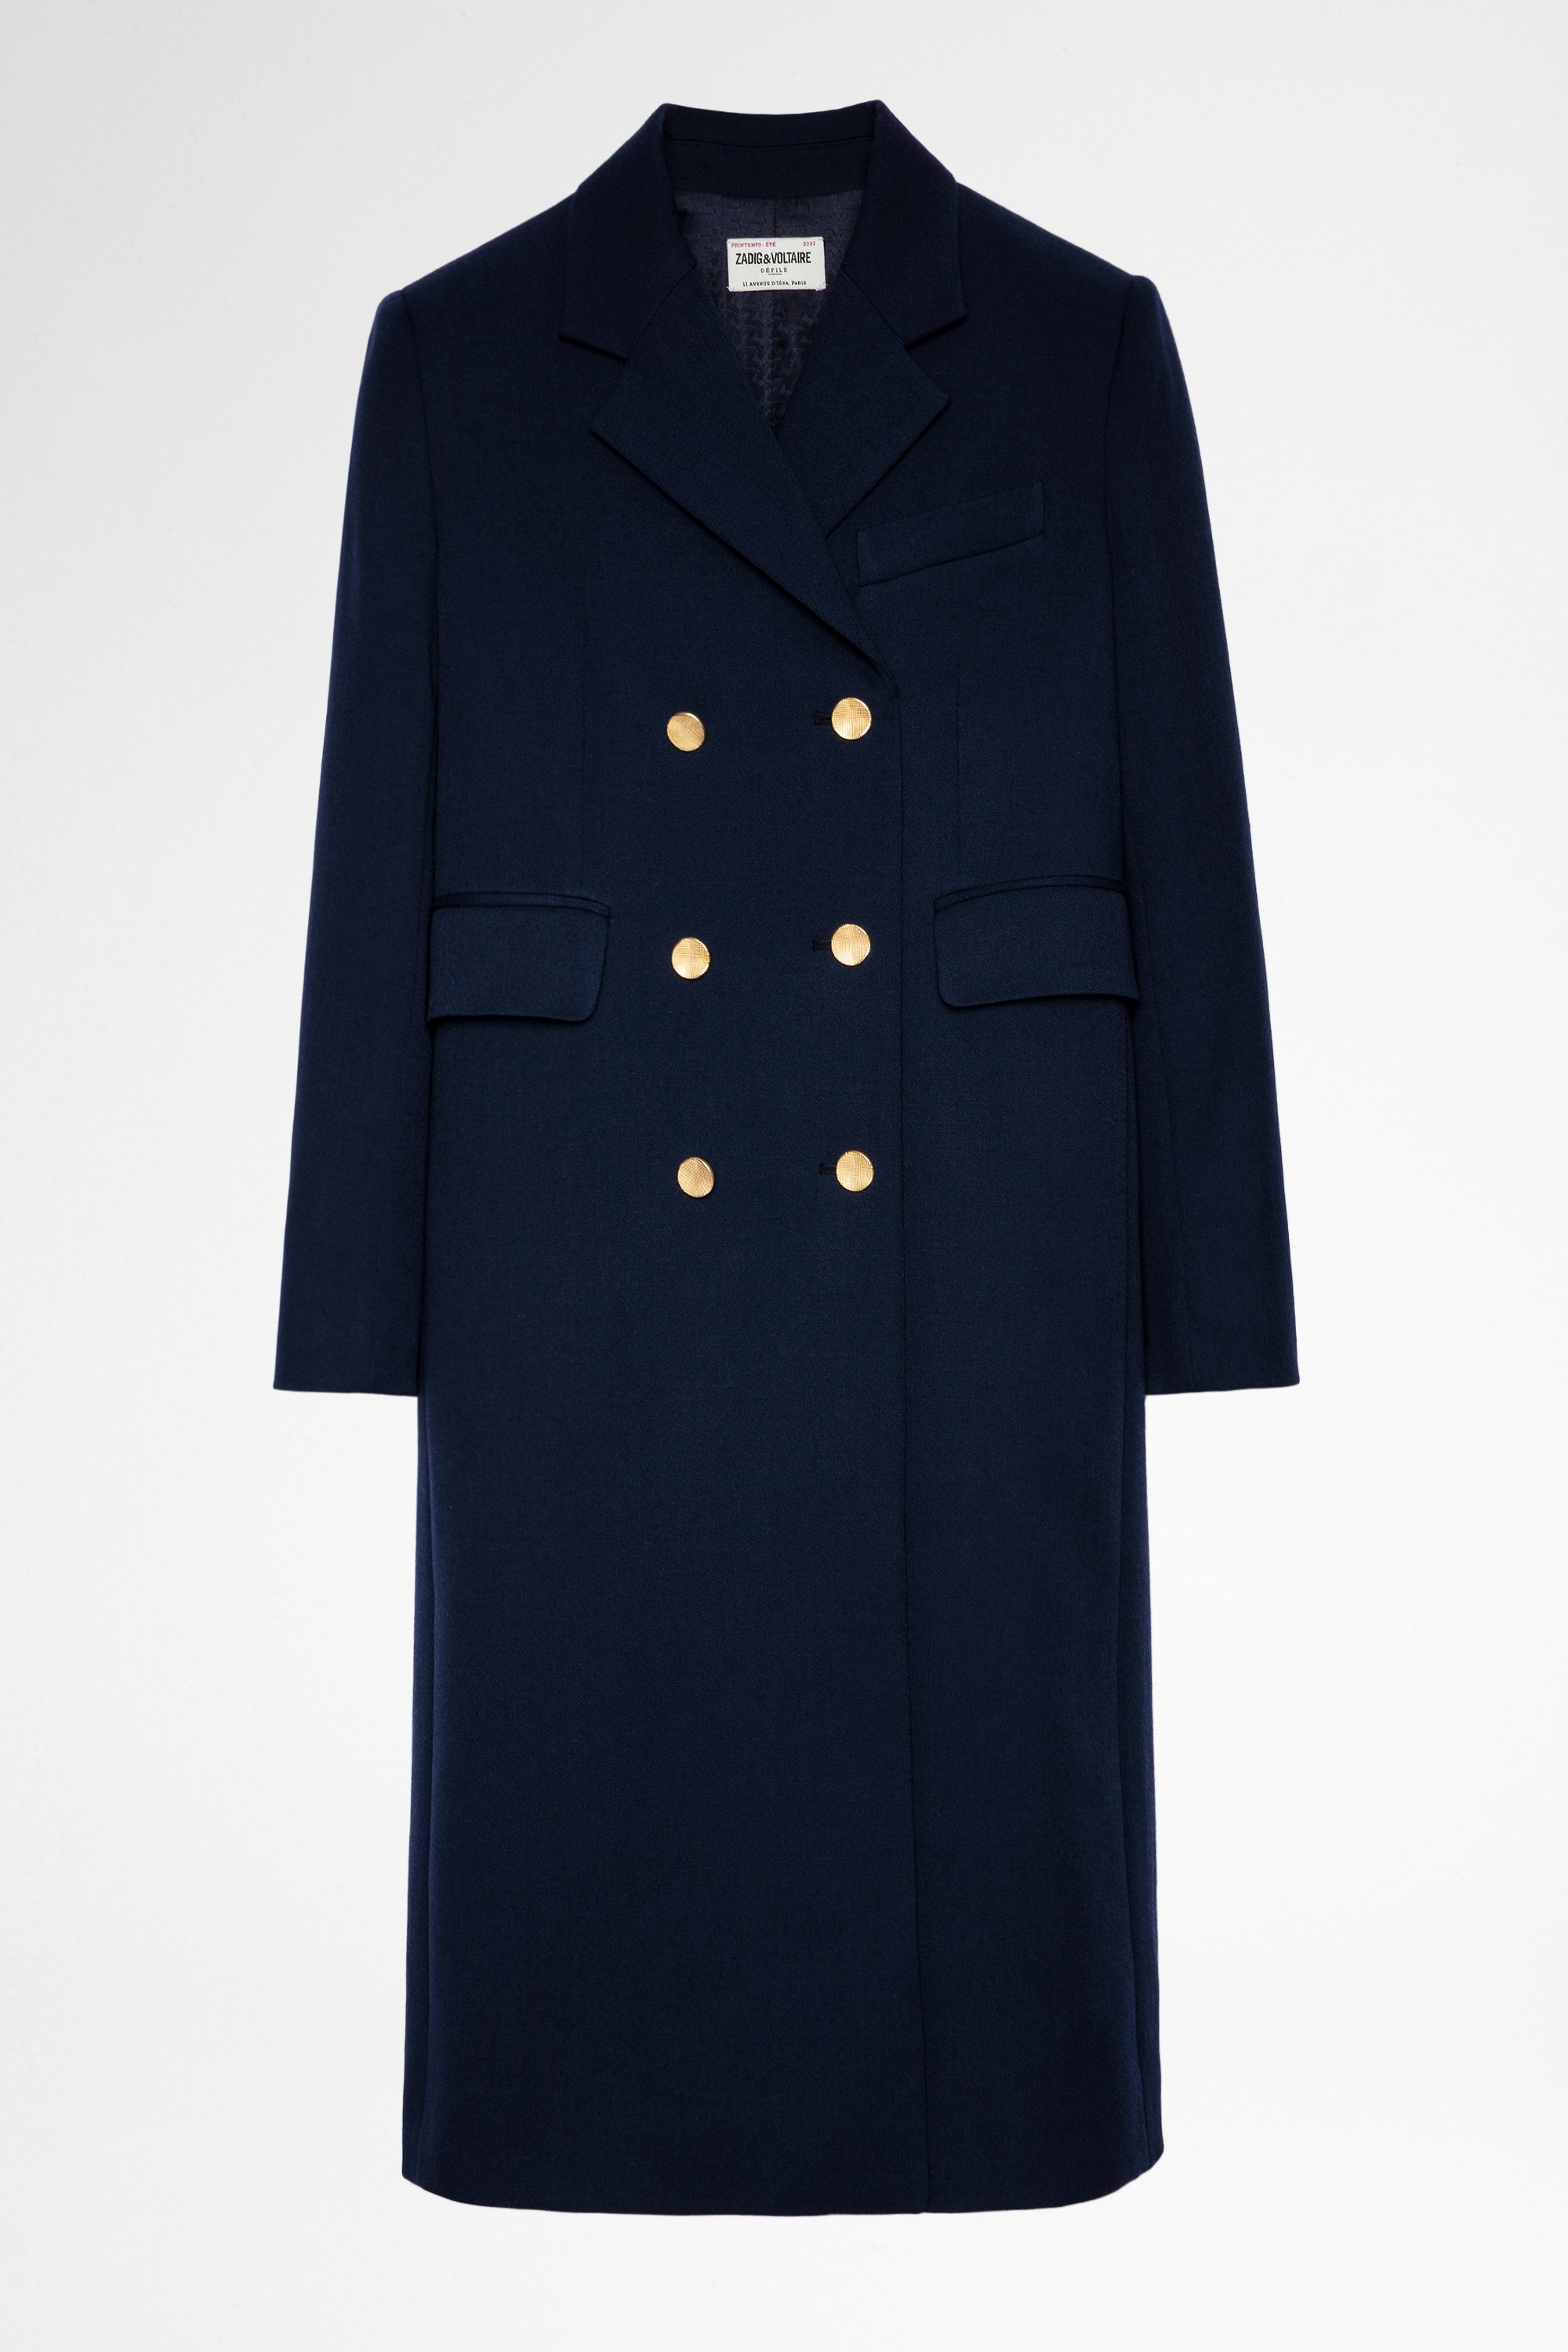 Mantel Maestro Marineblauer Damen-Offiziersmantel mit goldfarbenen Knöpfen